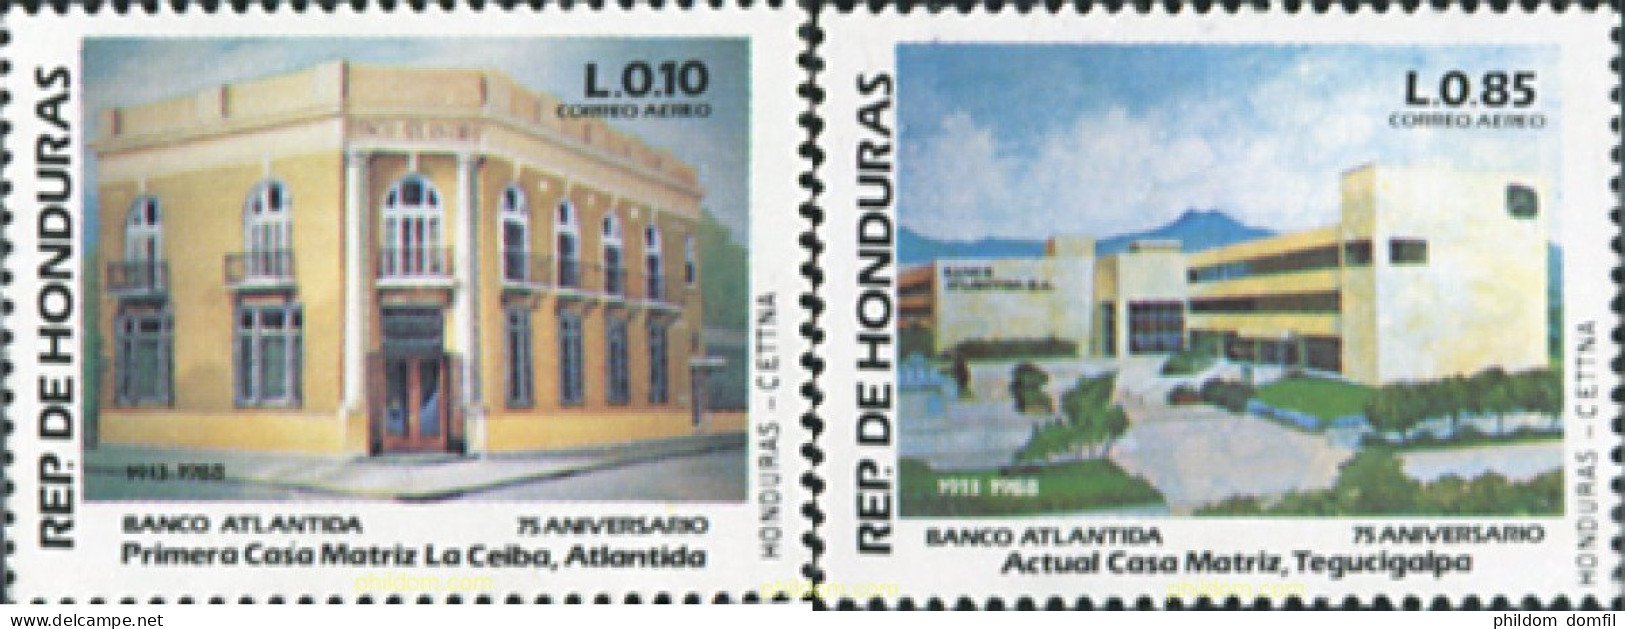 324165 MNH HONDURAS 1988 75 ANIVERSARIO DEL BANCO ATLANTIDA - Honduras